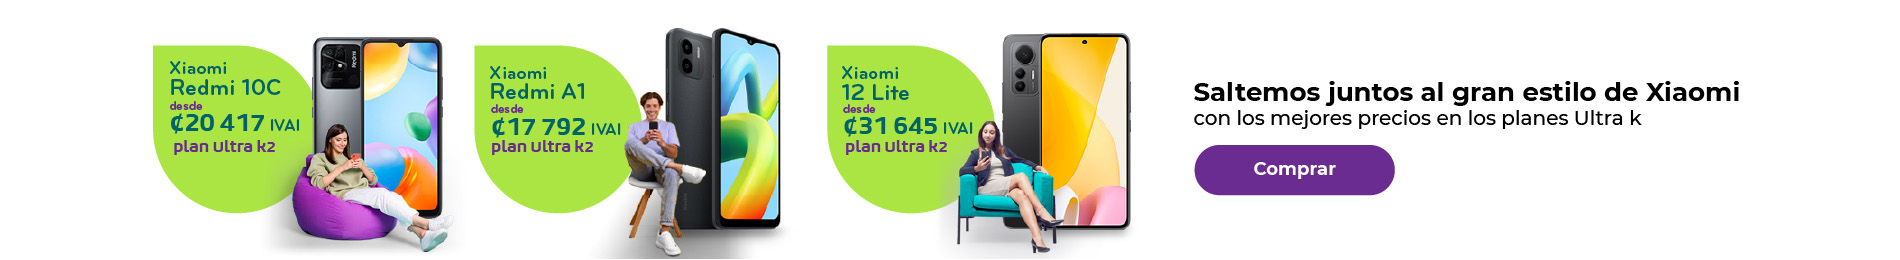 Saltemos juntos al gran estilo de Xiaomi, con los mejores precios en los planes Ultra k. Comprar 